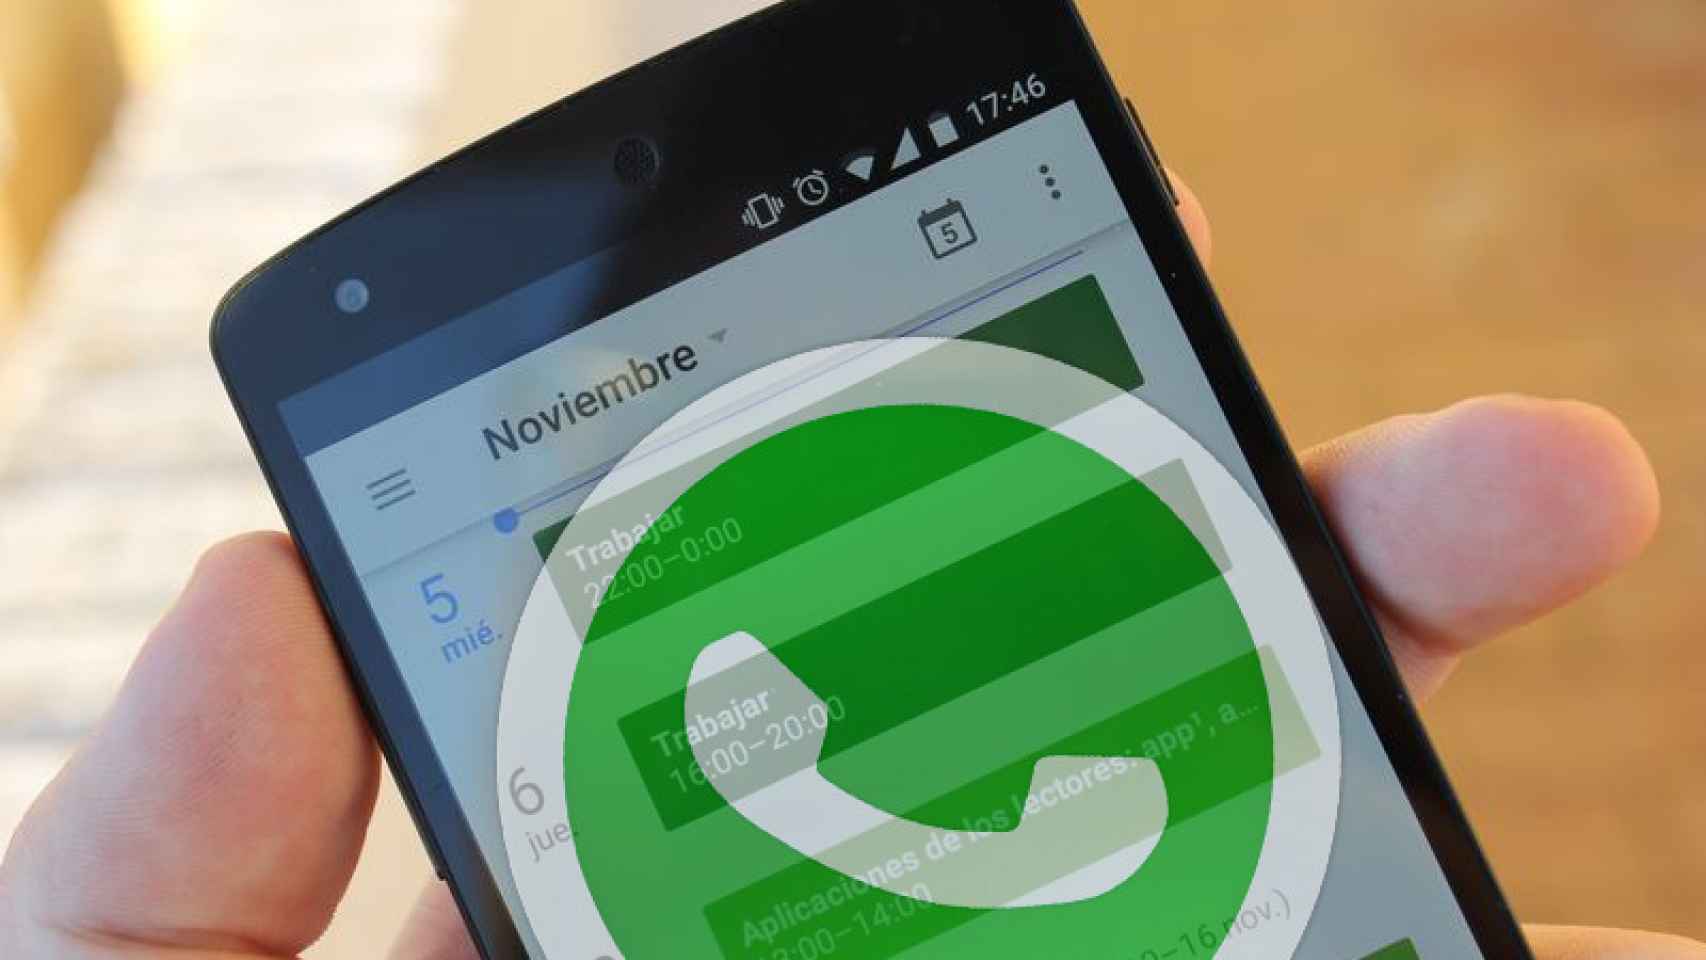 Cómo compartir eventos y recordatorios a través de Whatsapp